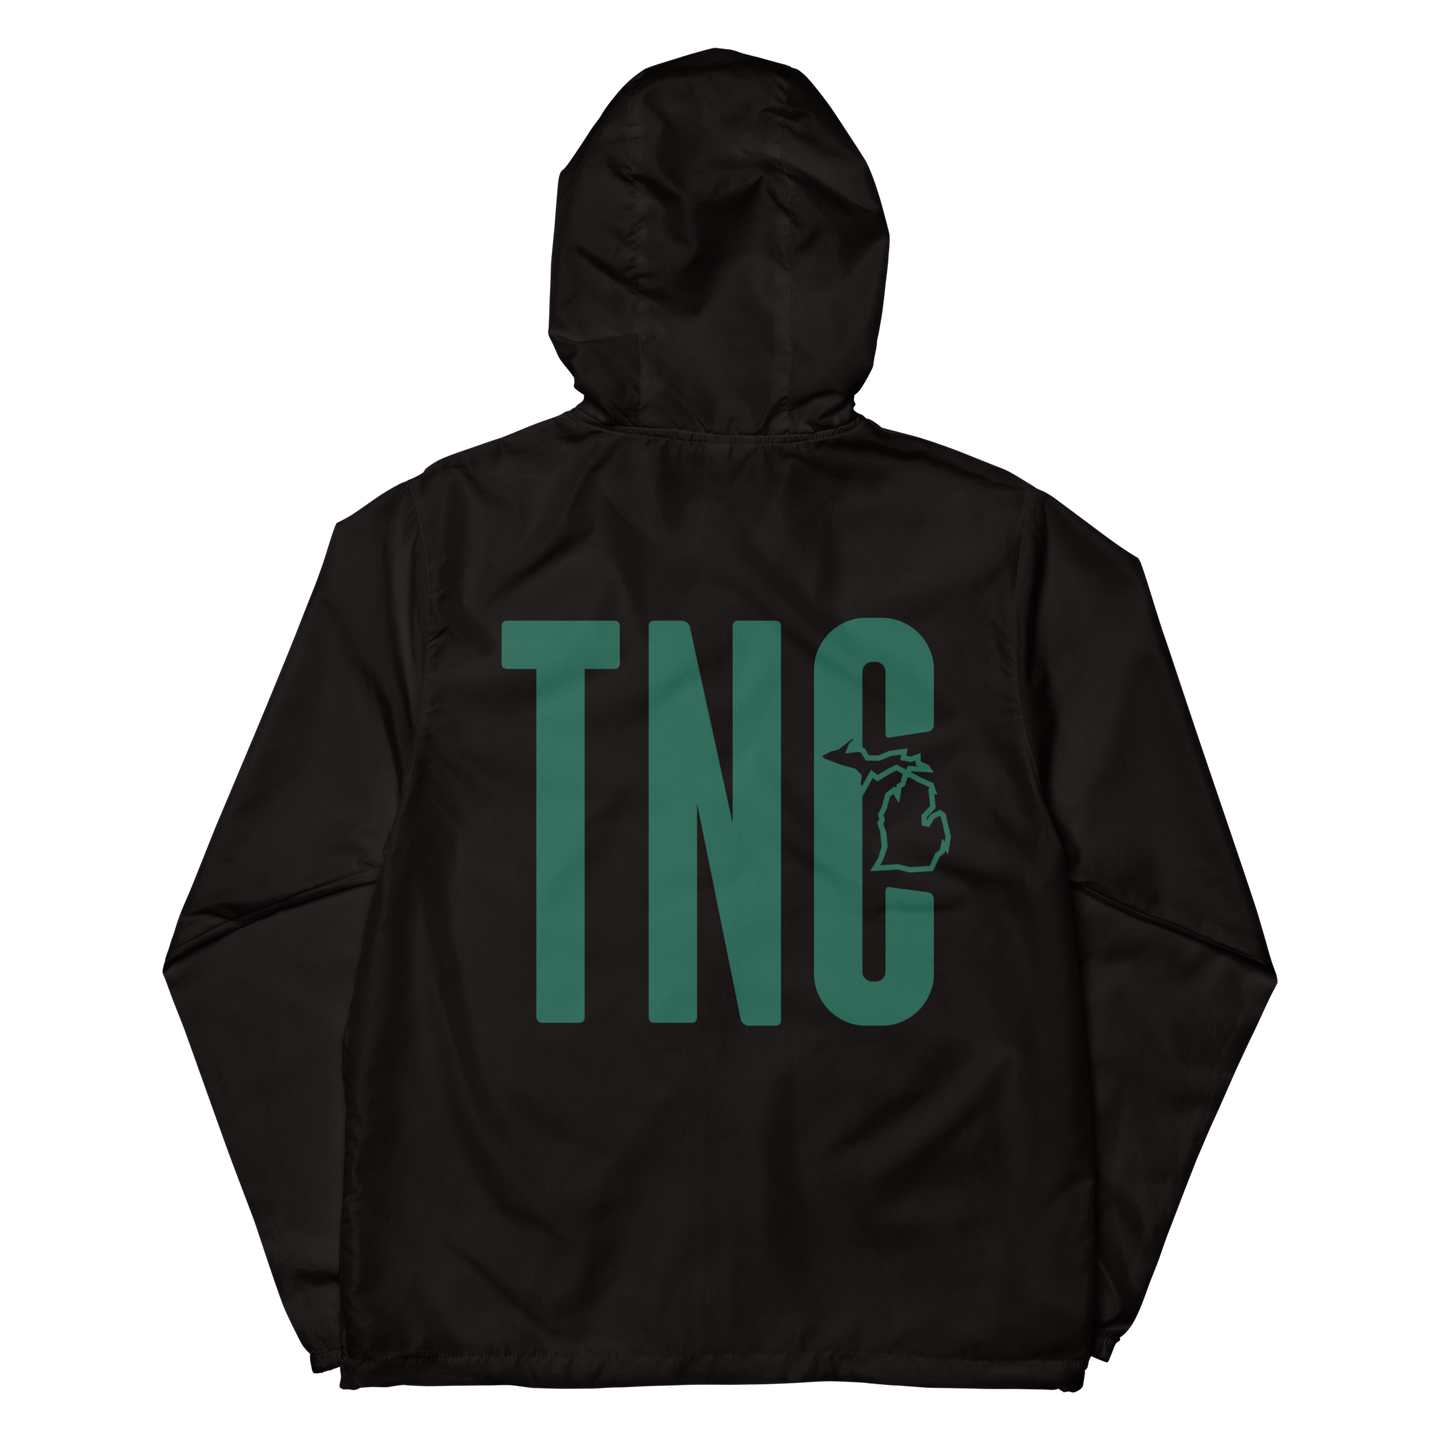 TNC lightweight zip up windbreaker